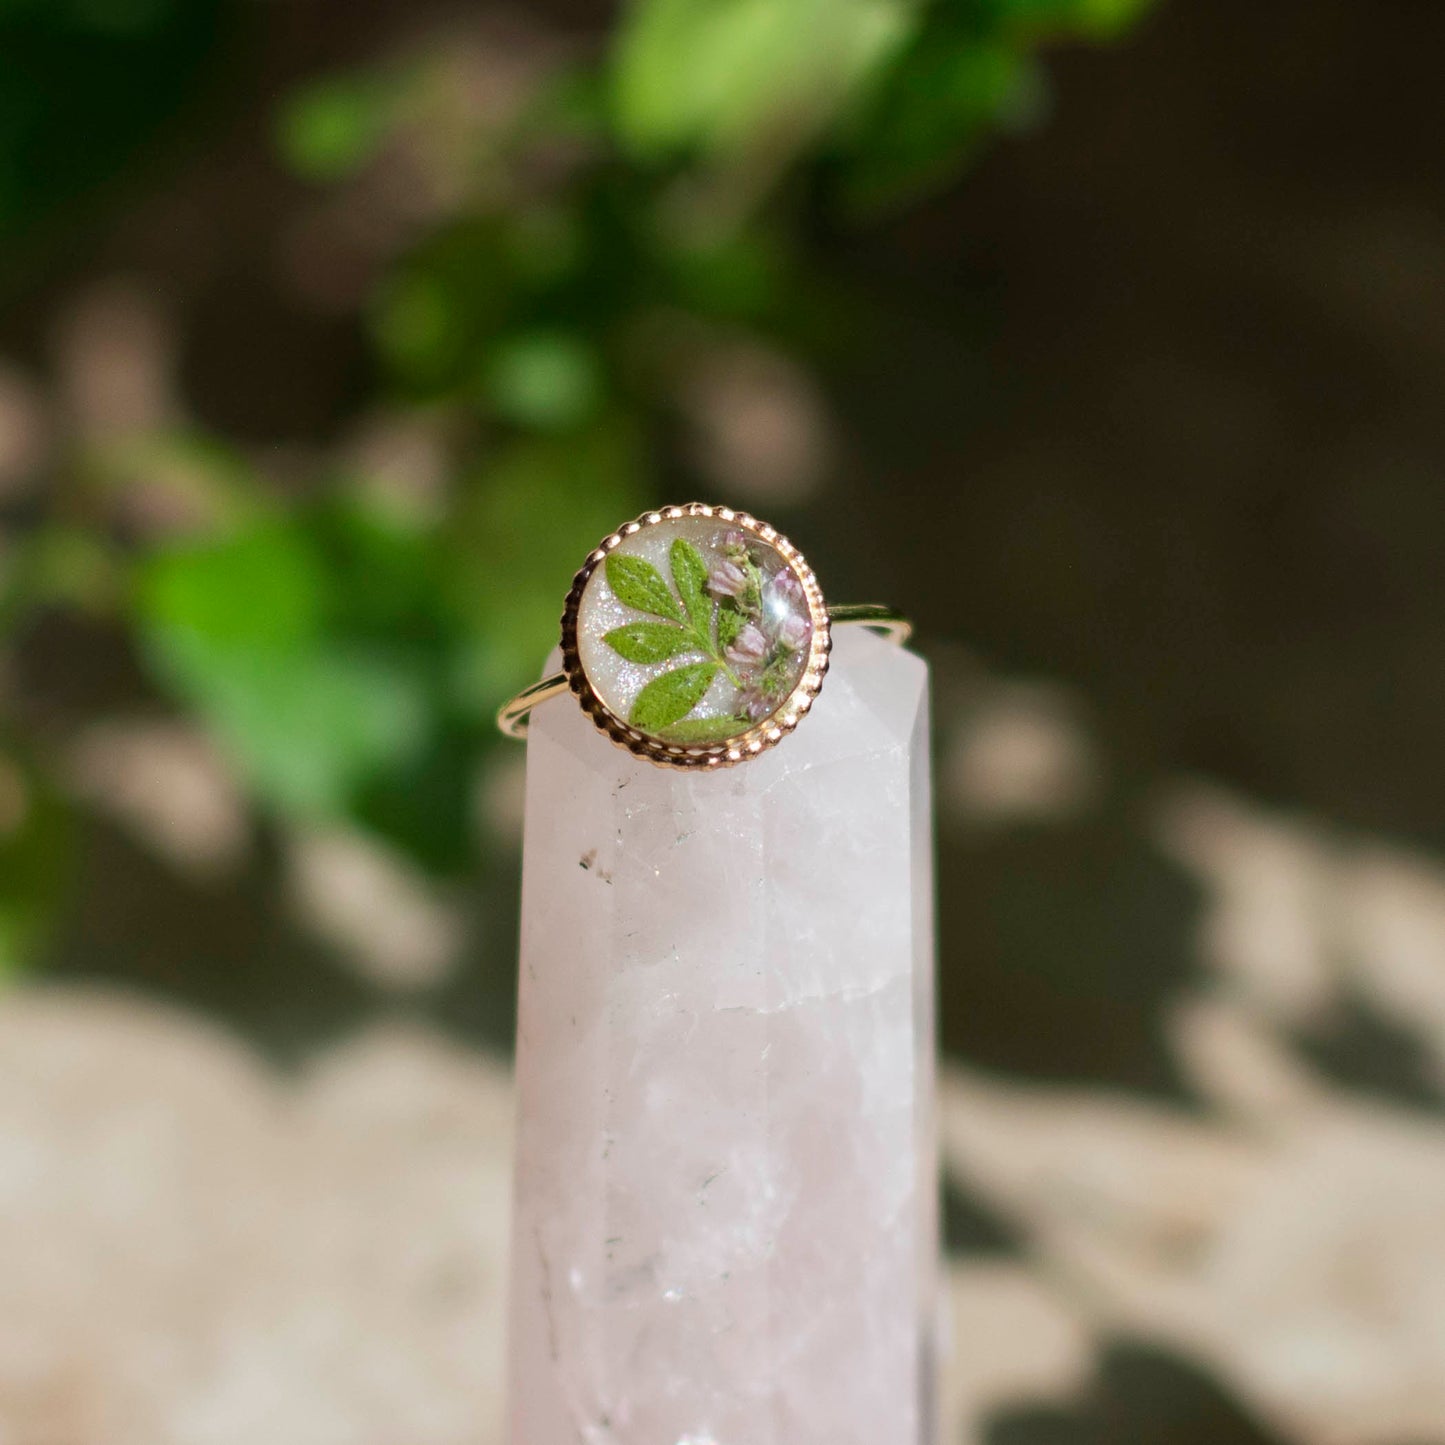 Dasiphora Leaf & Tamarisk Flower Ring - Size 7